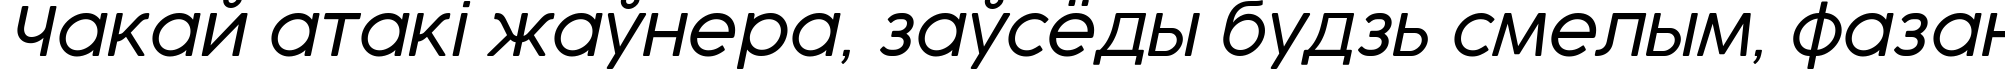 Пример написания шрифтом Cocogoose Pro Light Italic текста на белорусском